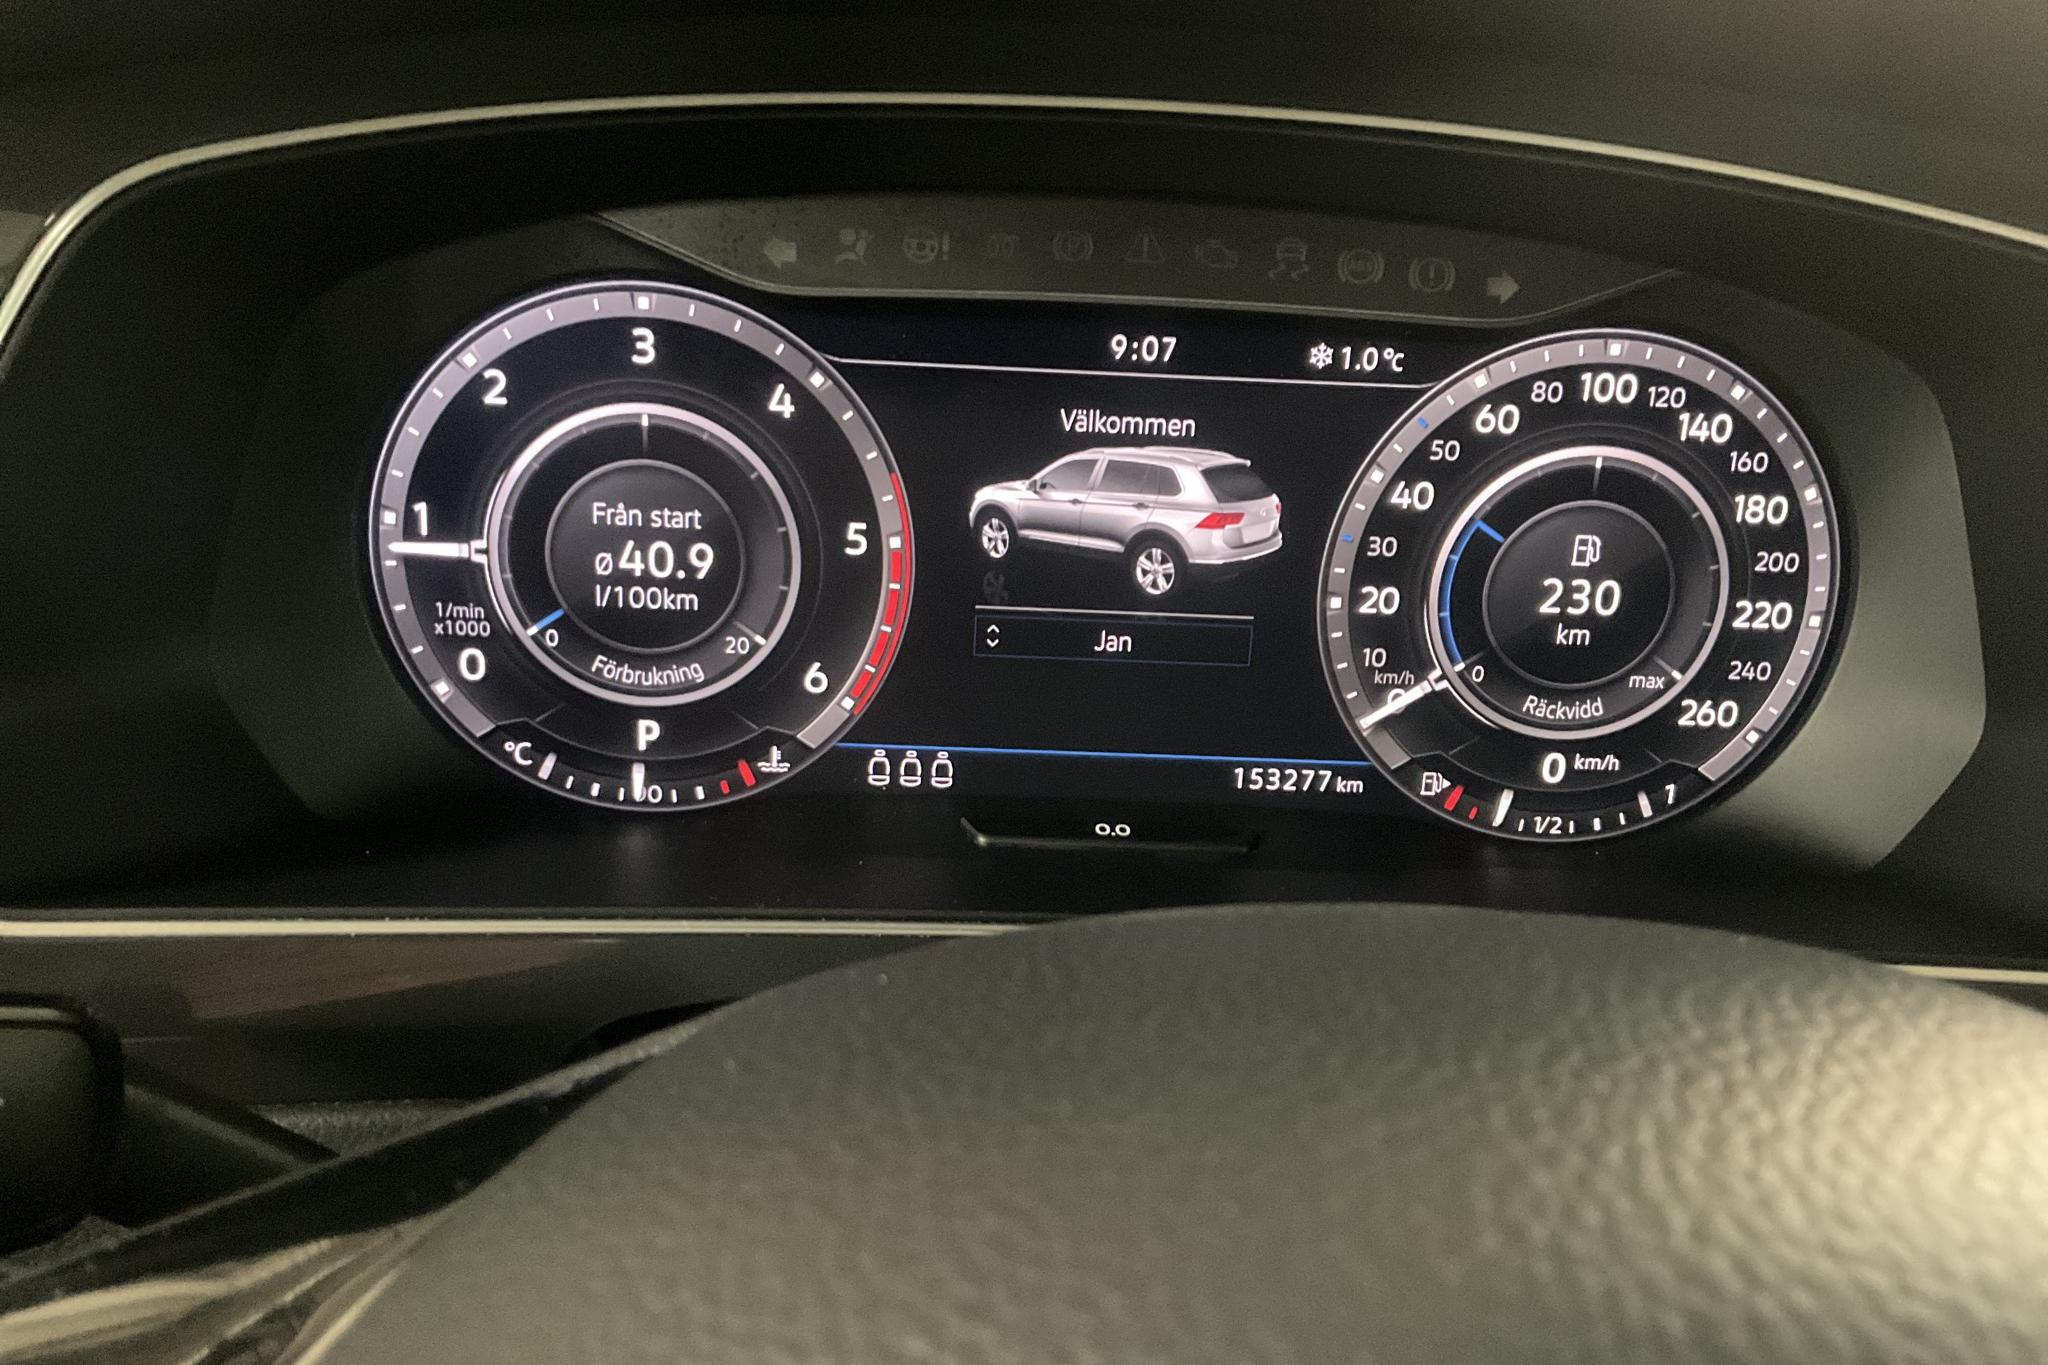 VW Tiguan 2.0 TDI 4MOTION (190hk) - 15 328 mil - Automat - Dark Red - 2018